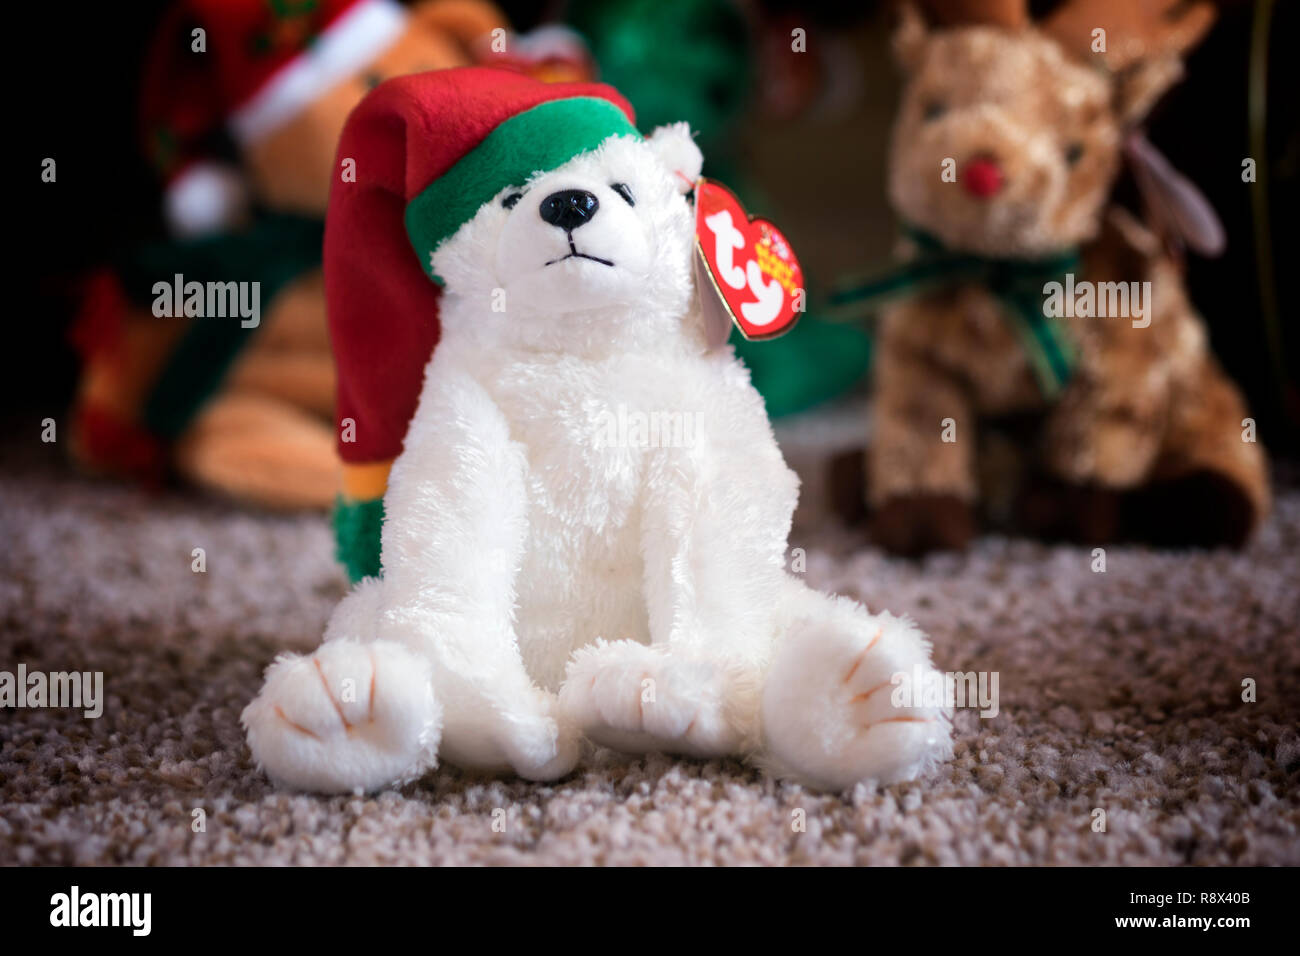 Snowdrift. Un bonnet de Noël bébé de la société Ty. Banque D'Images